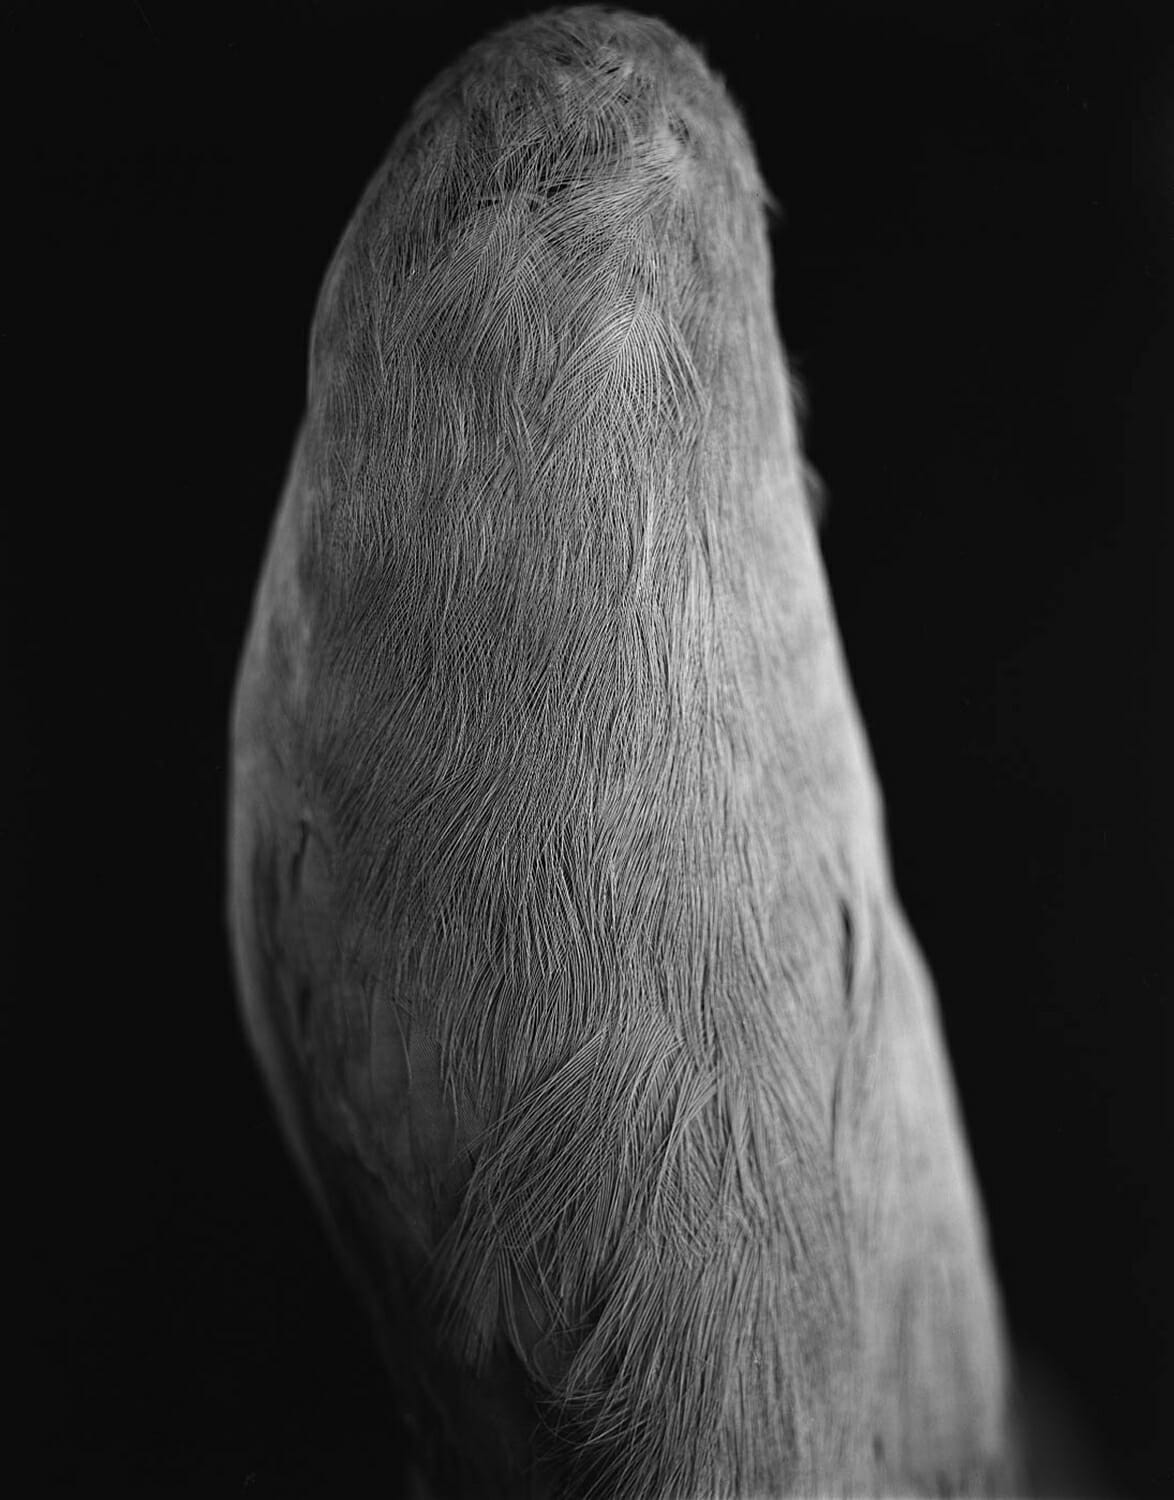 Coracine chauve (Perissocephalus tricolor) de dos